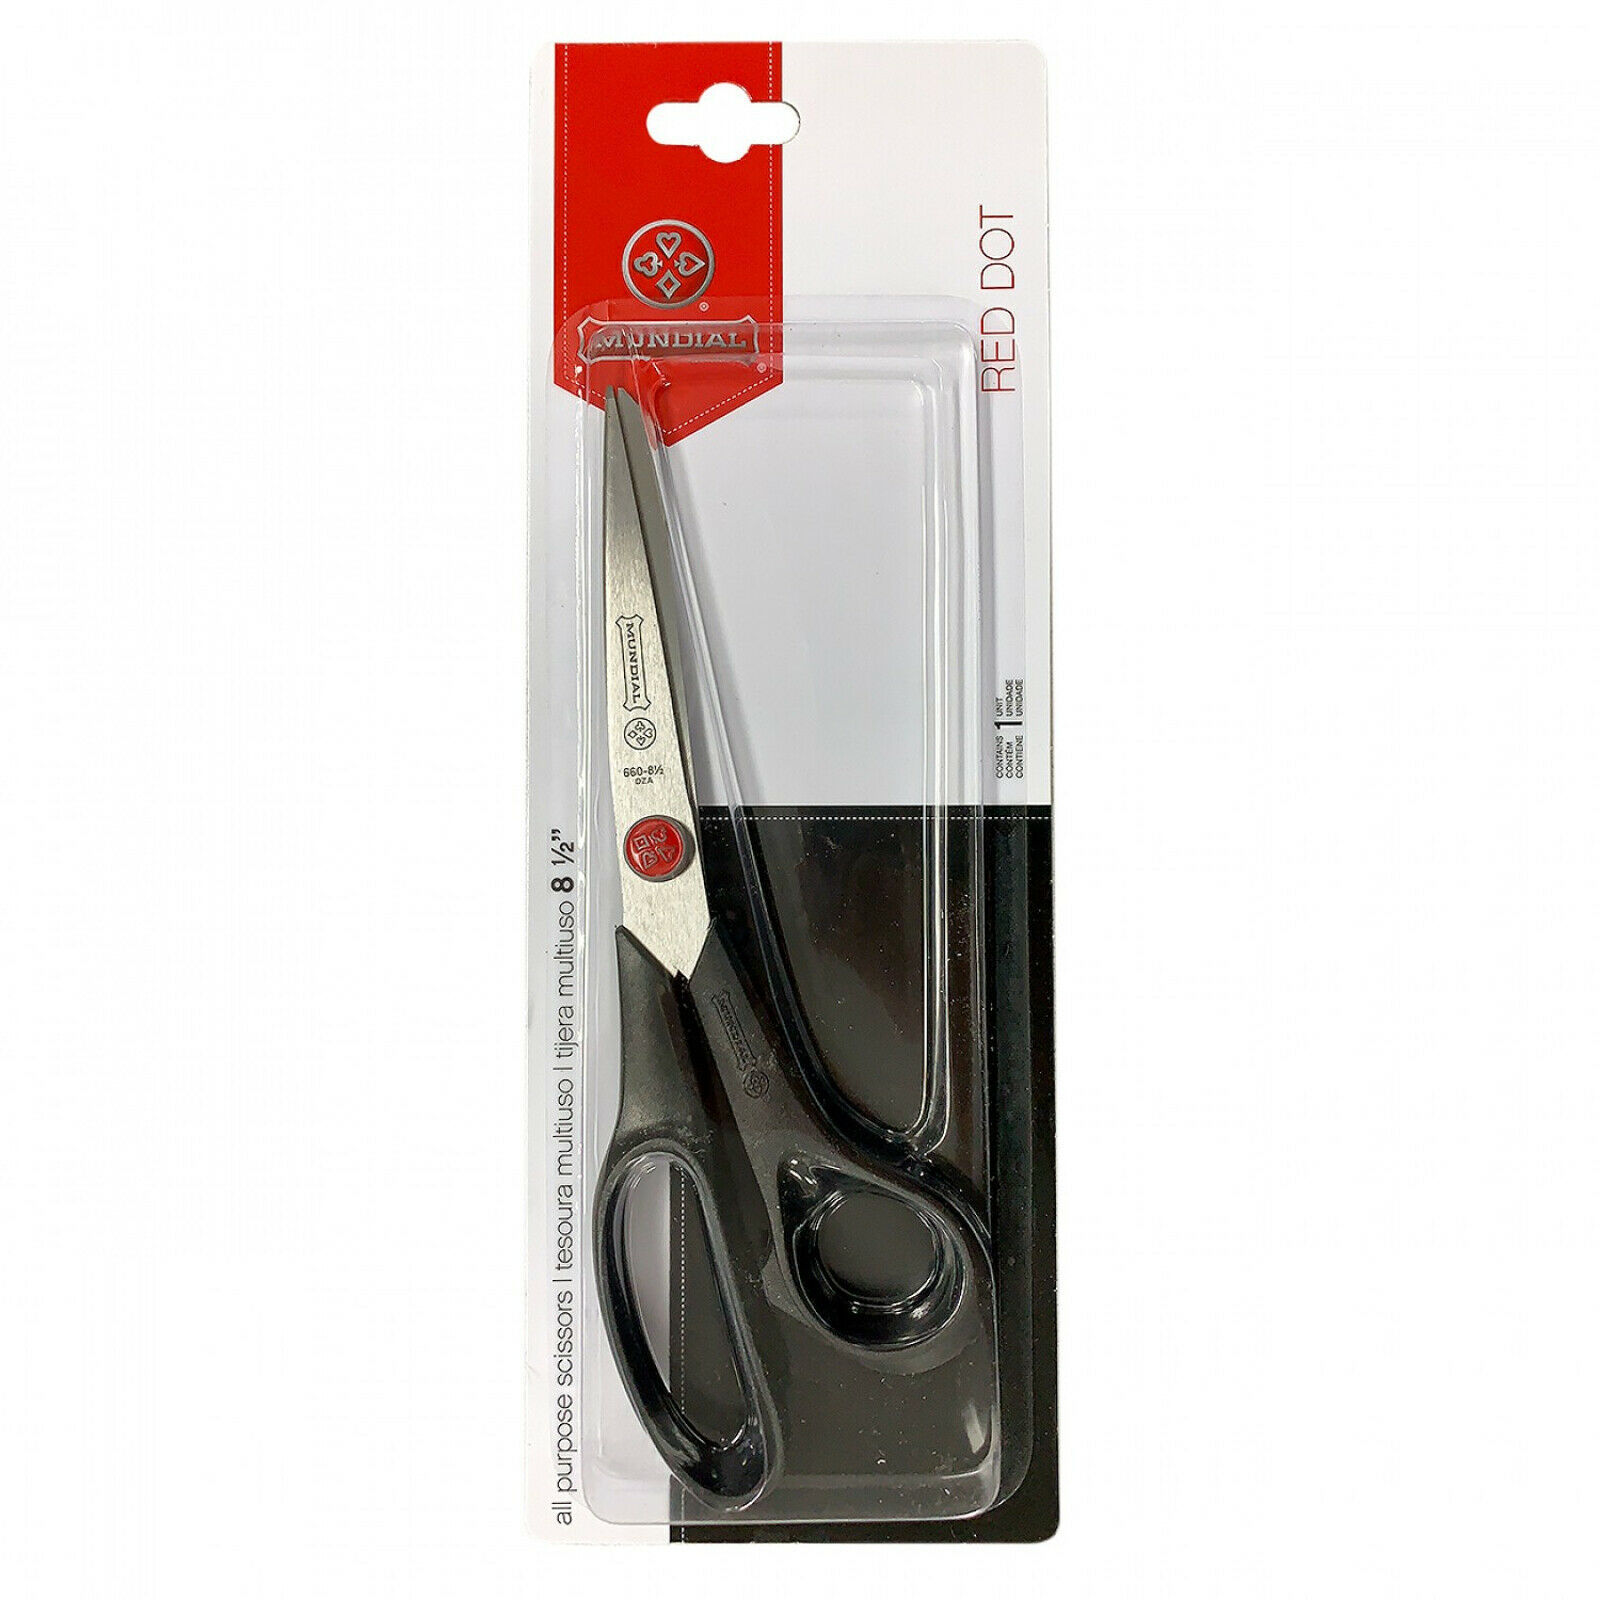 Mundial 8 1/2 Inch All Purpose Scissors - $20.66